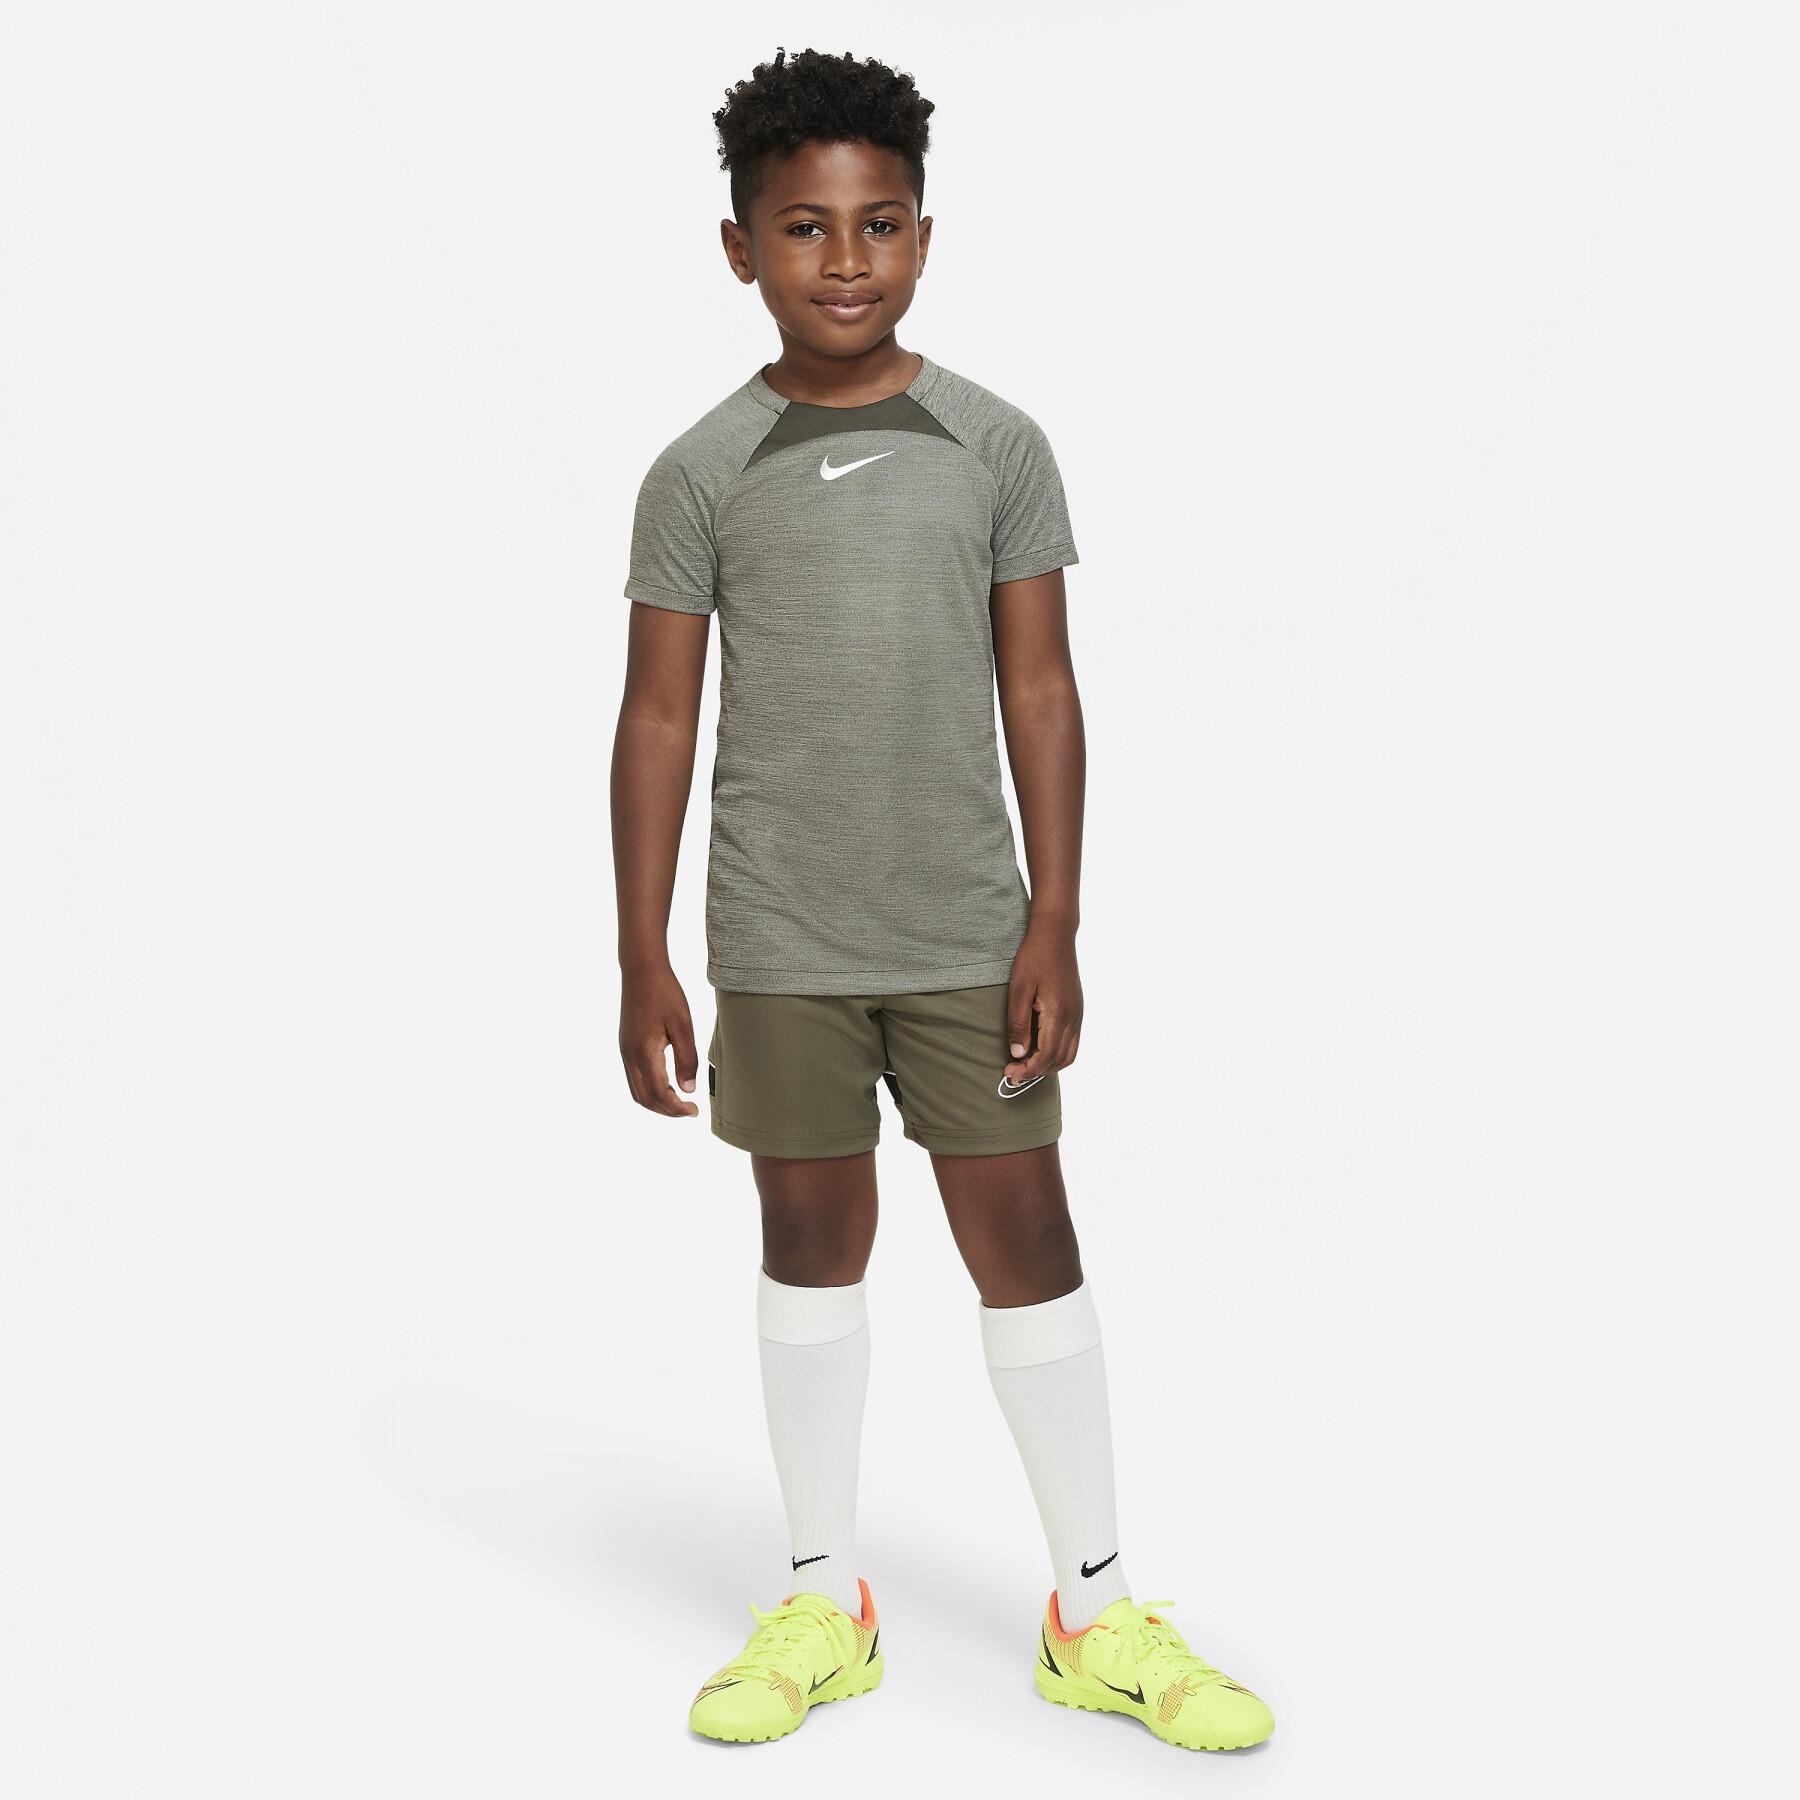 Maillot enfant Nike Dri-FIT ADV GX